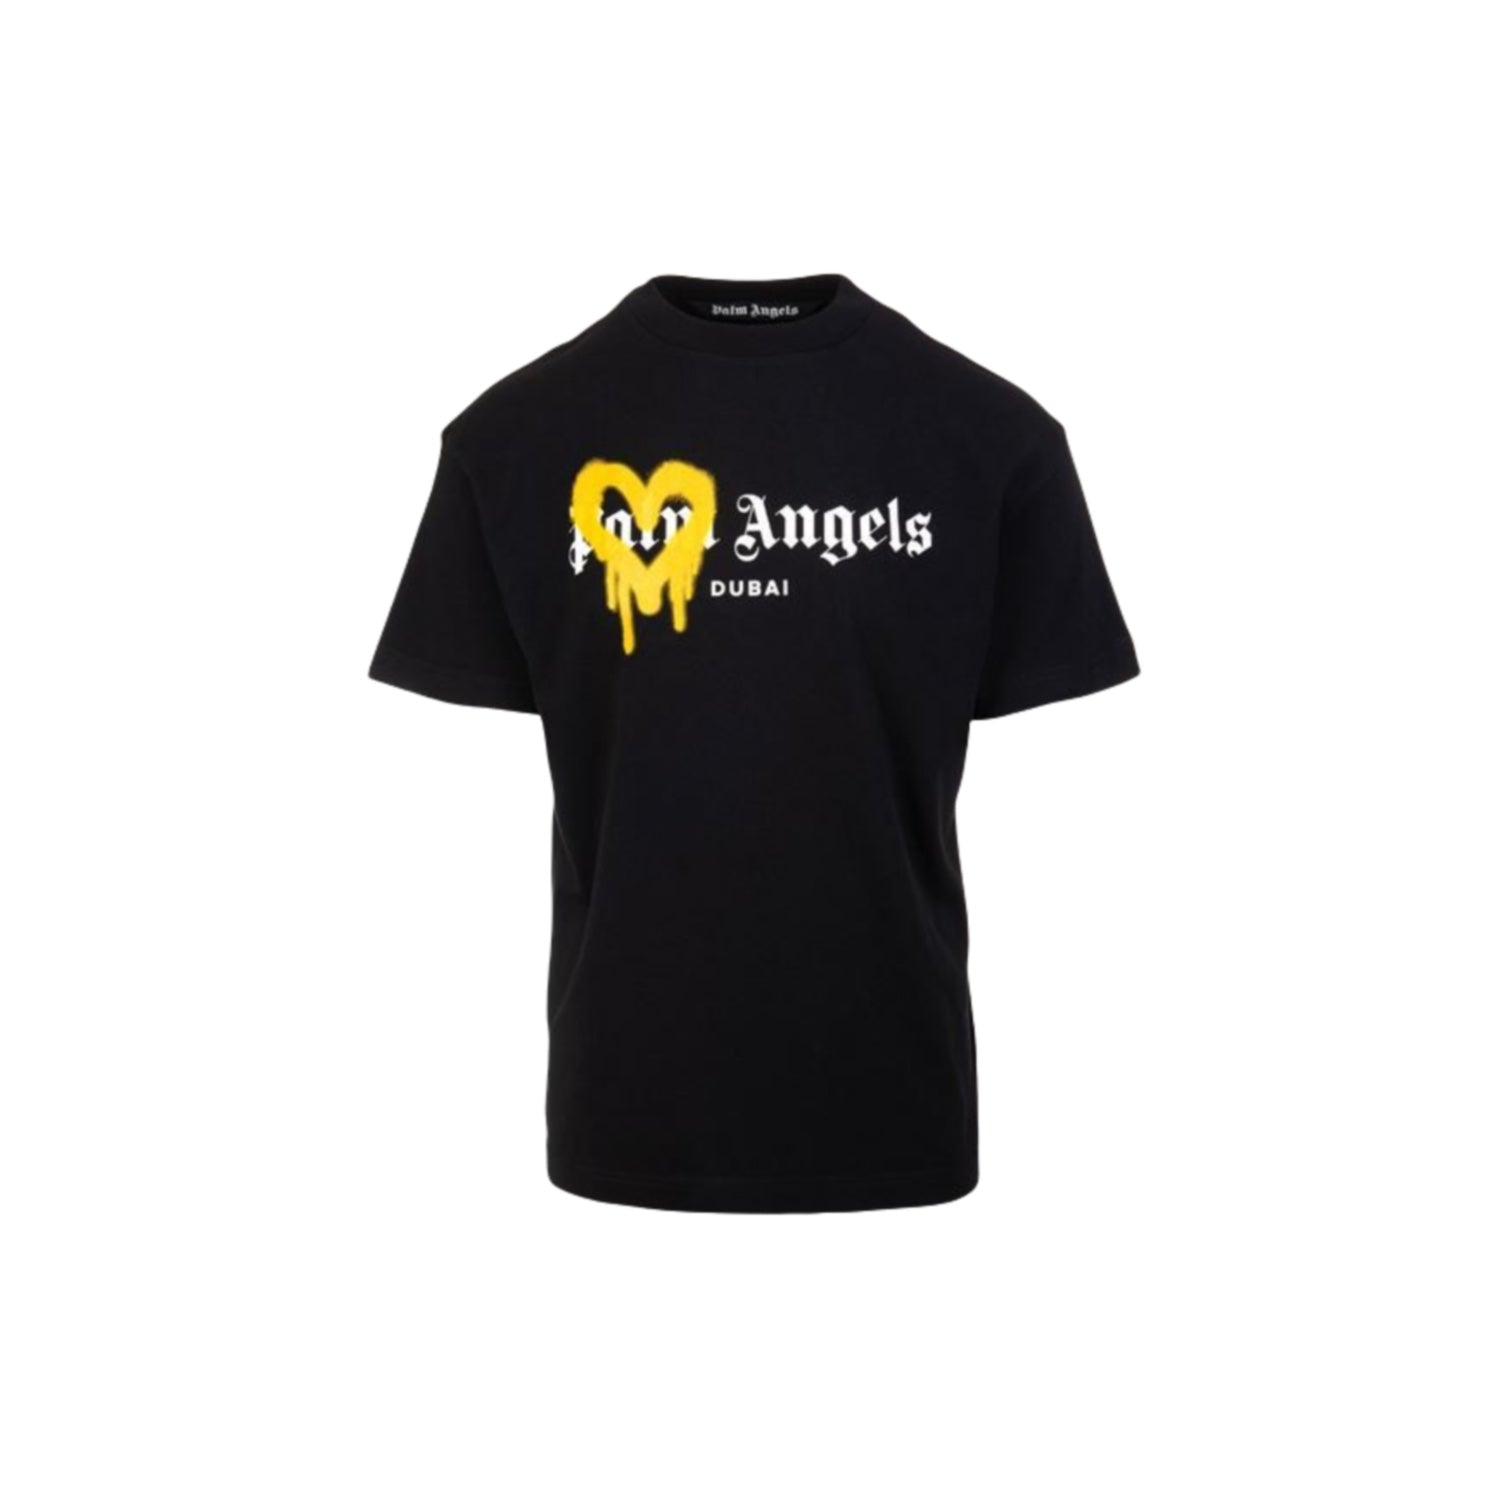 Palm Angels 'Dubai' T-shirt